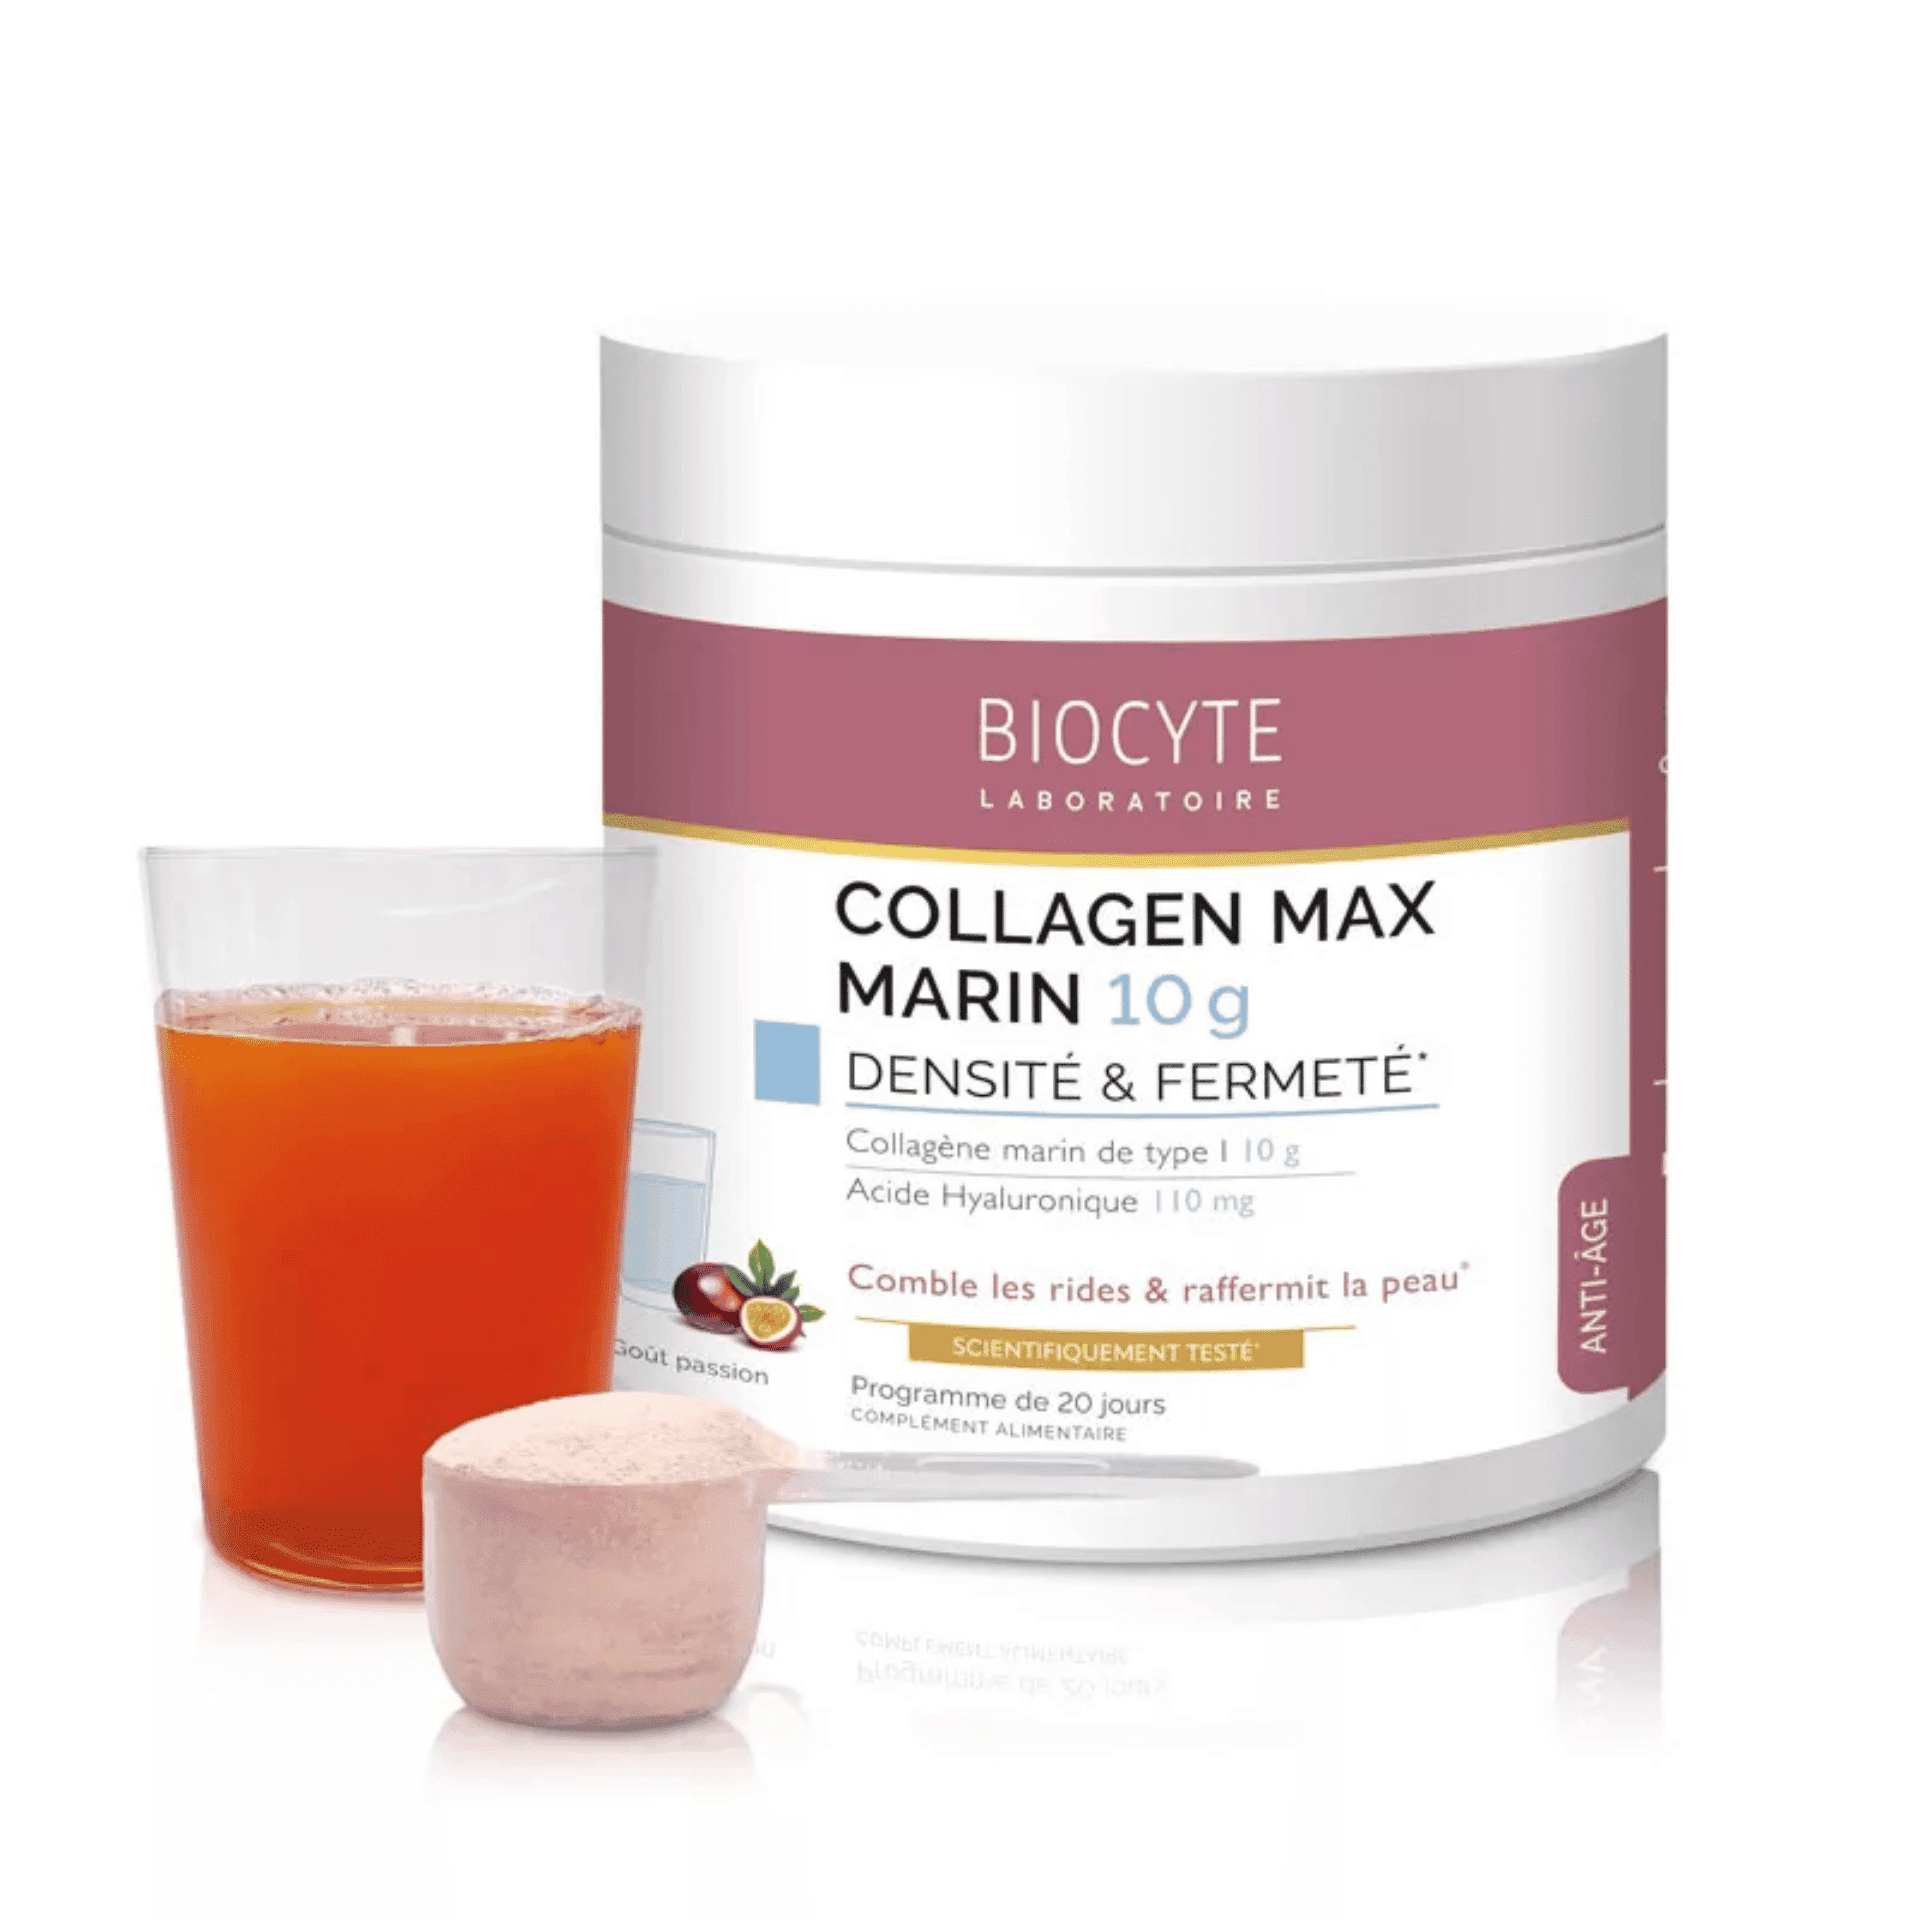 Biocyte Collagen Max Marin 10 g